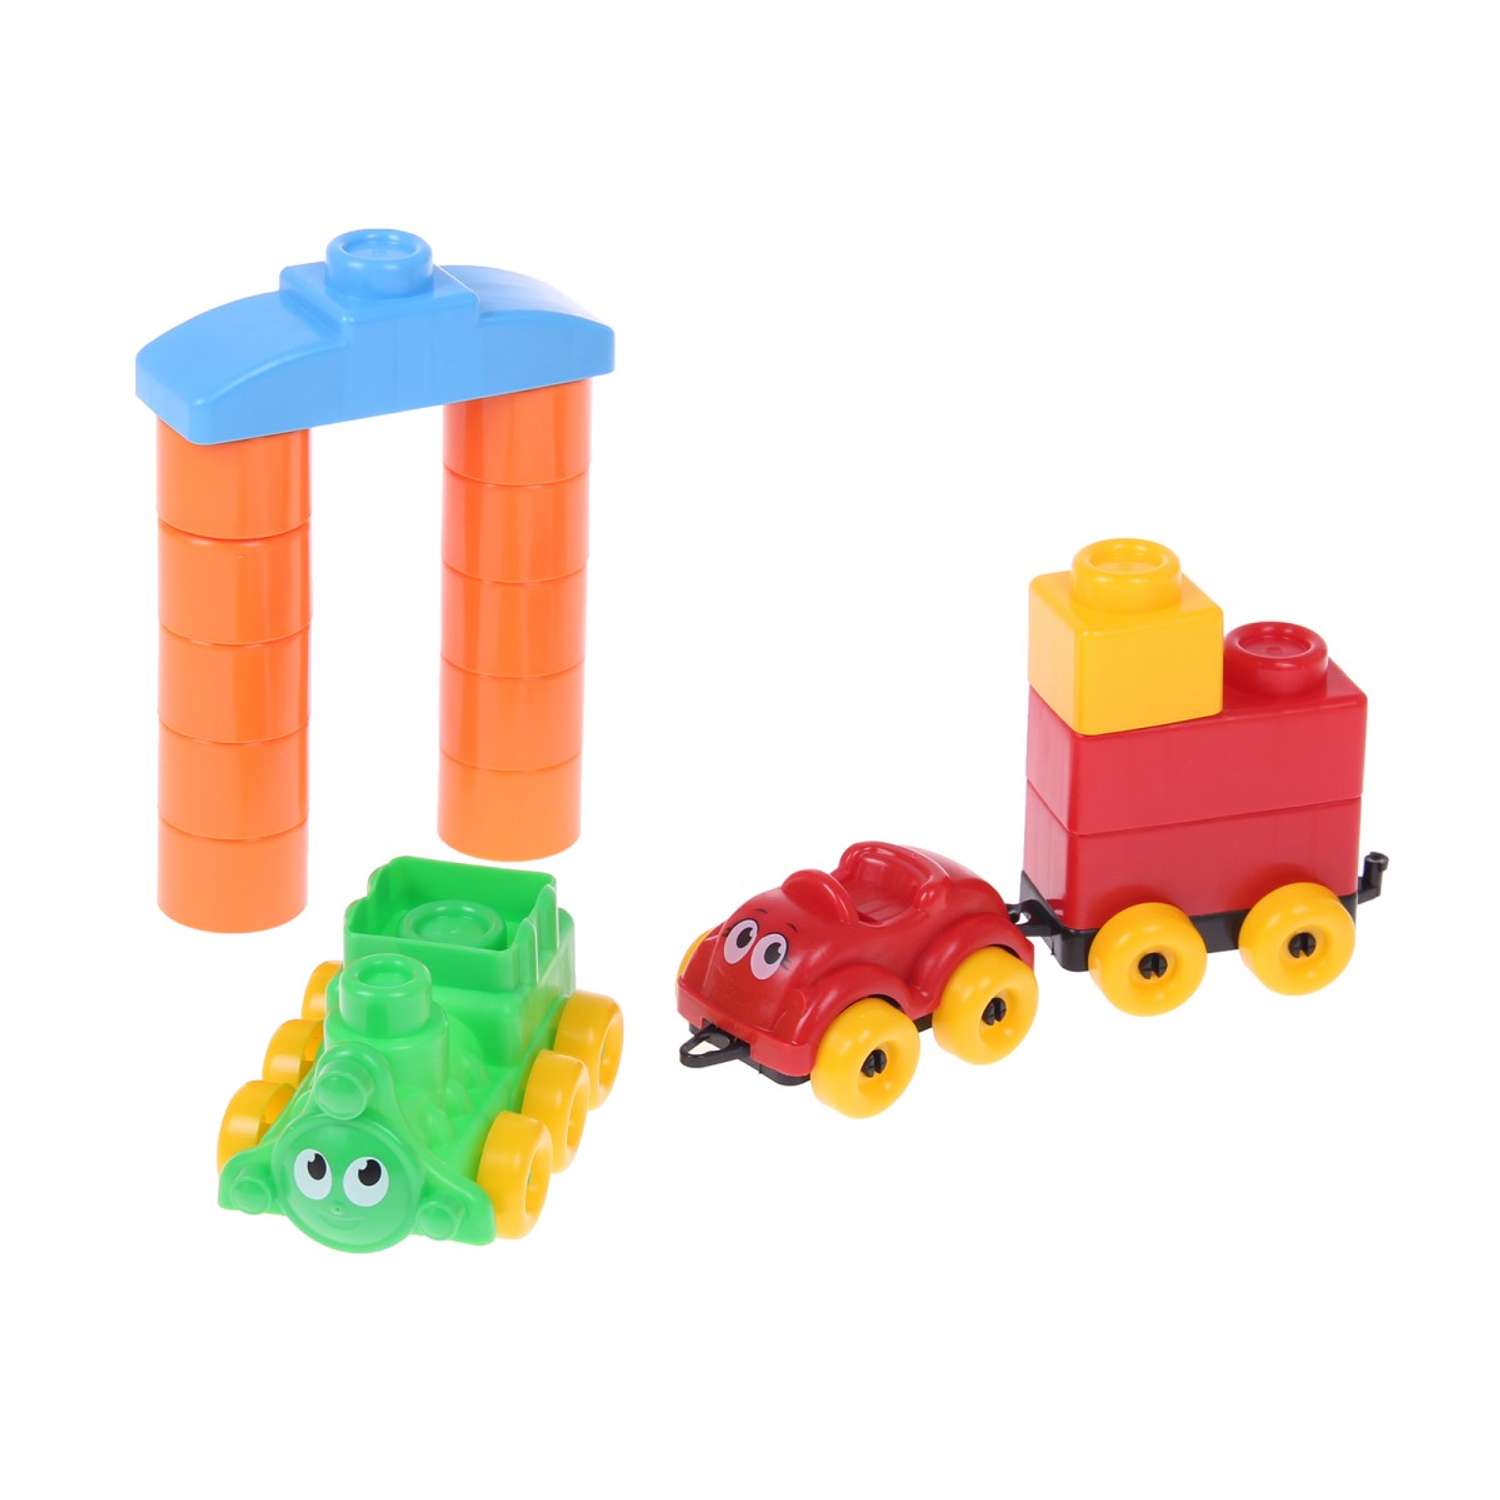 Развивающие игрушки БИПЛАНТ для малышей конструктор Кноп-Кнопыч 61 деталь + Сортер кубик логический малый - фото 7